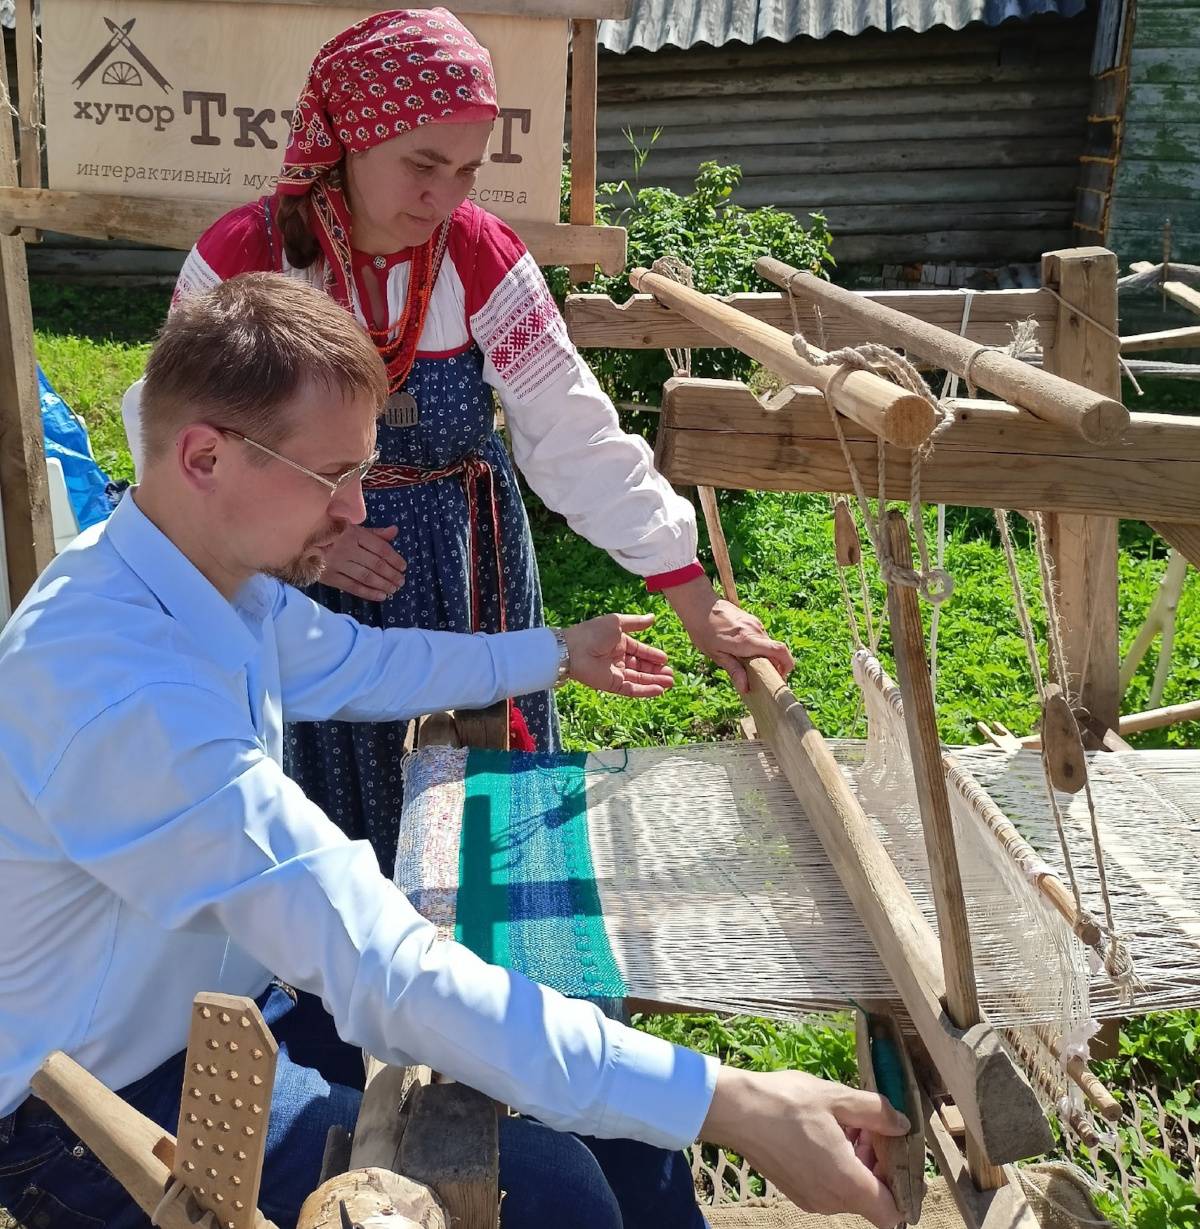 На окуловском хуторе Ткуттут готовятся к «Слёту ткачей»